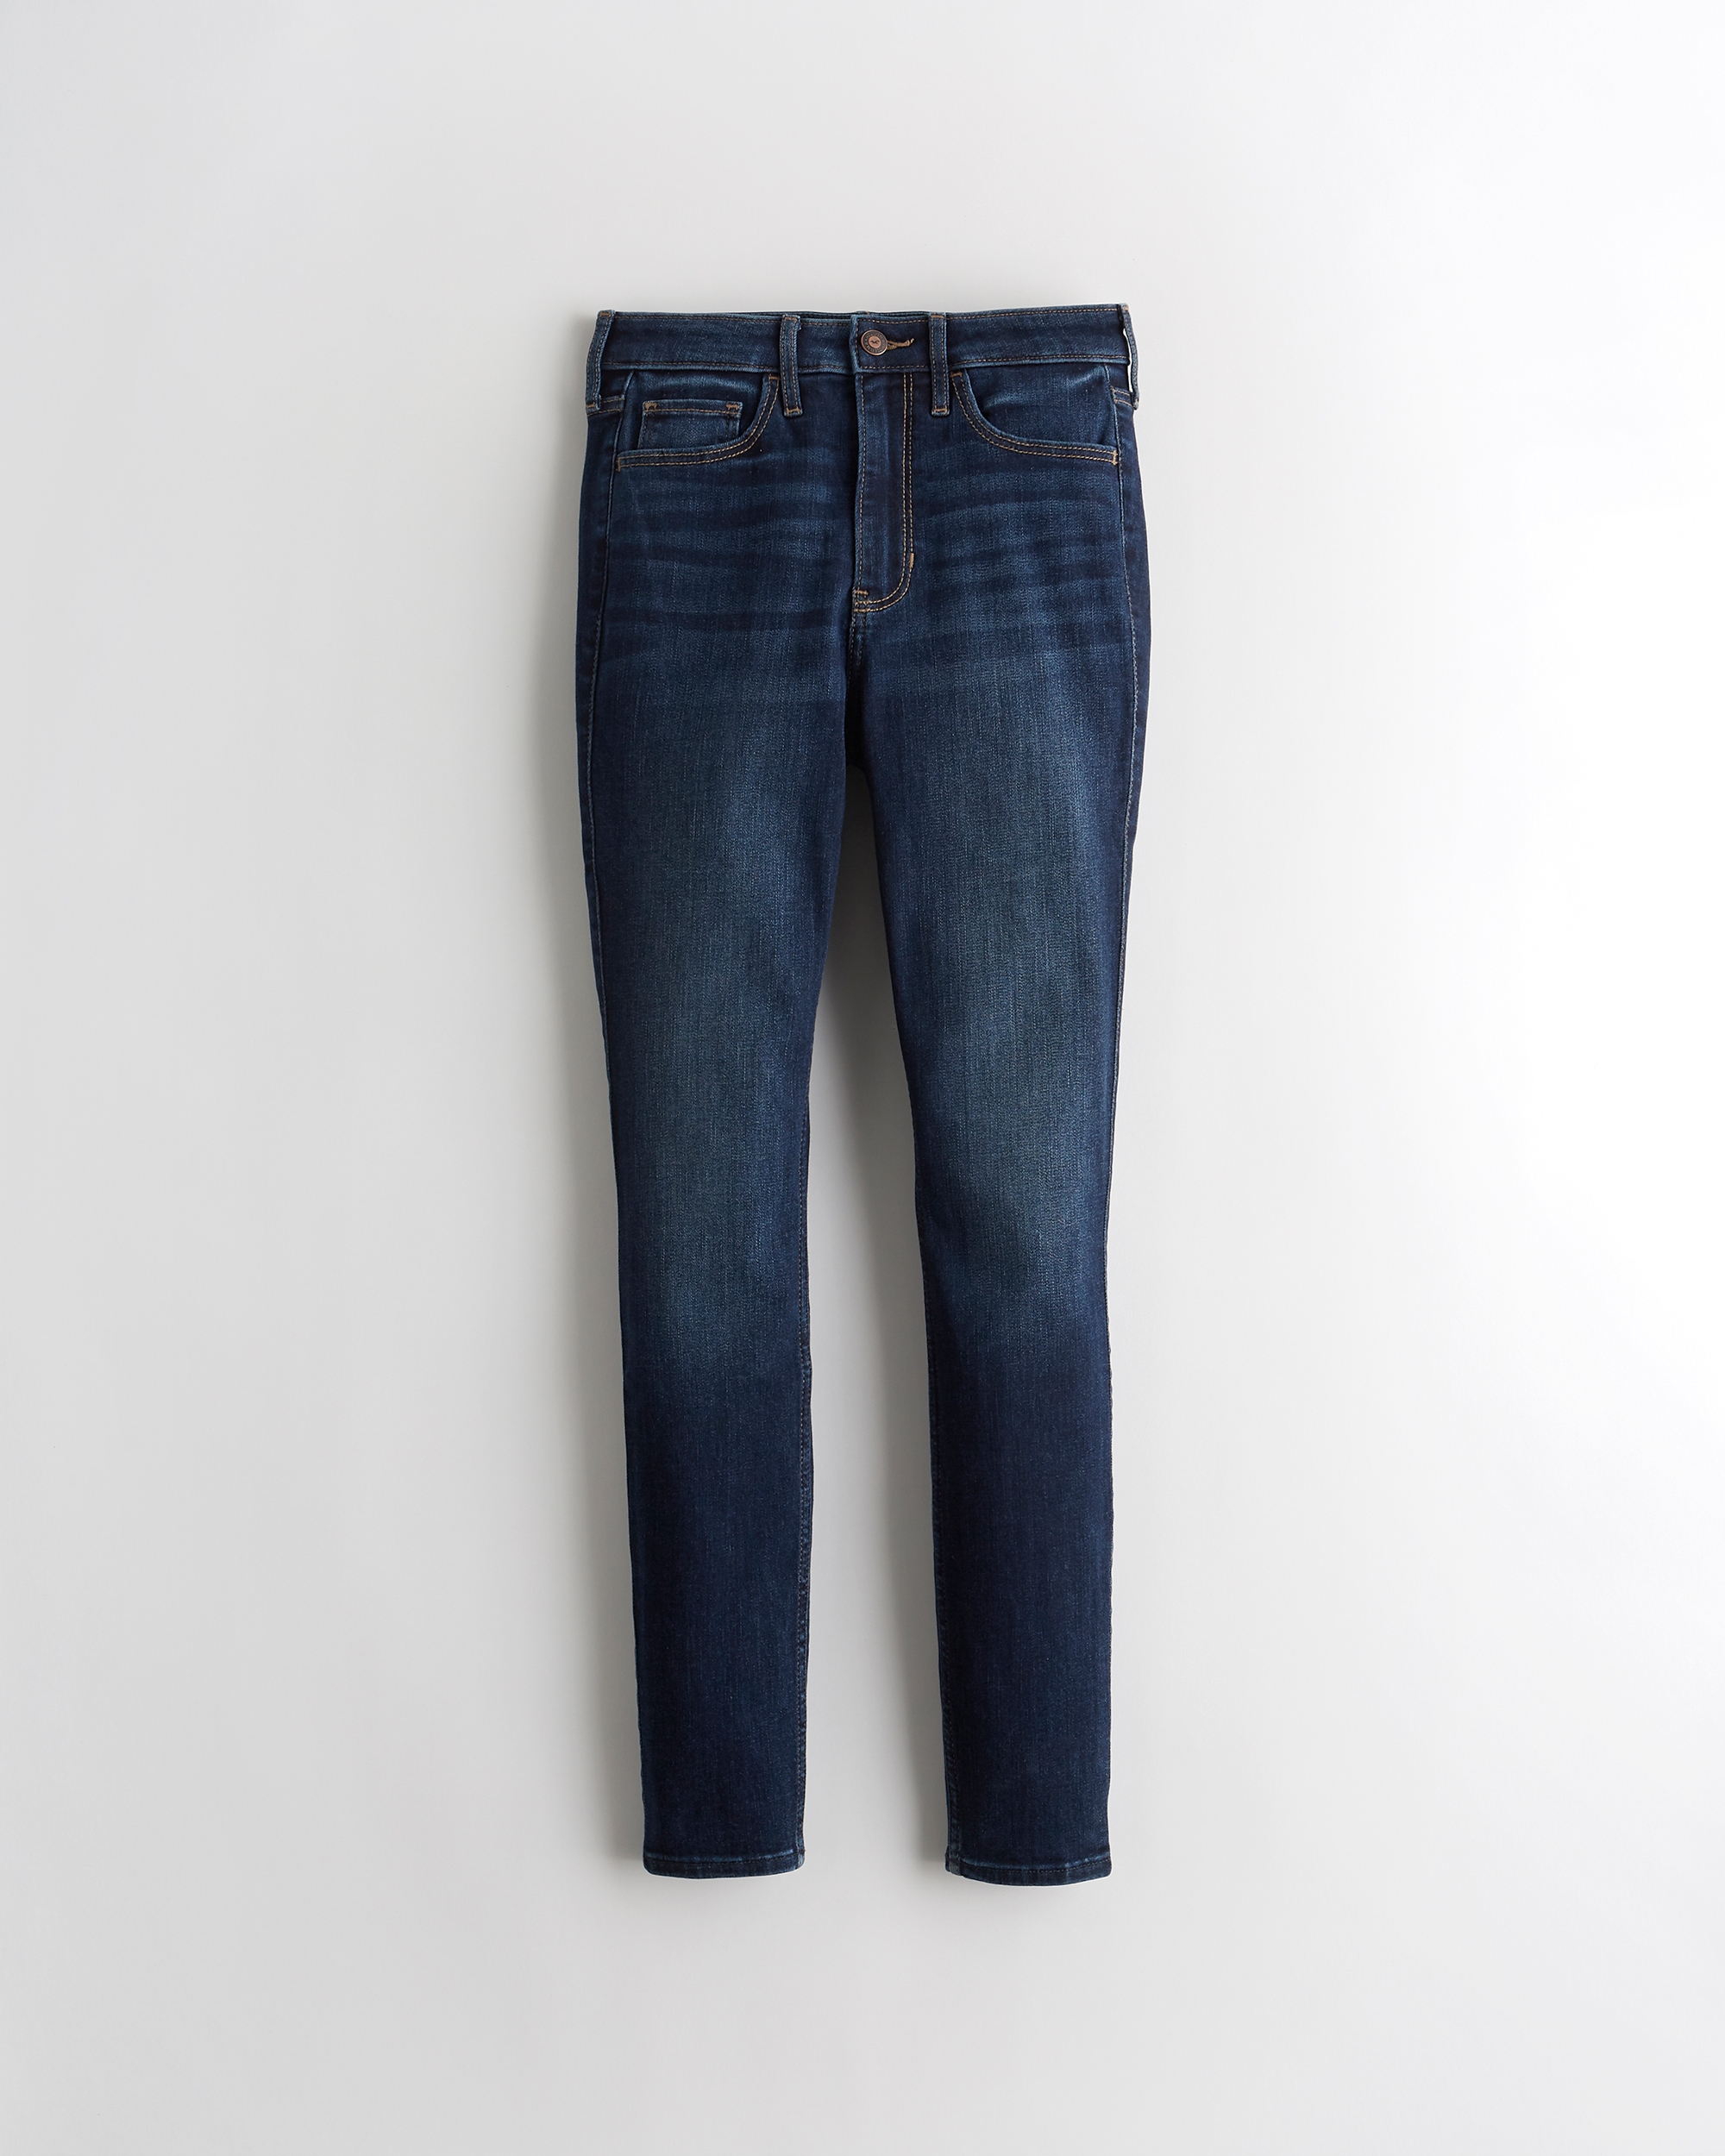 hollister jeans online